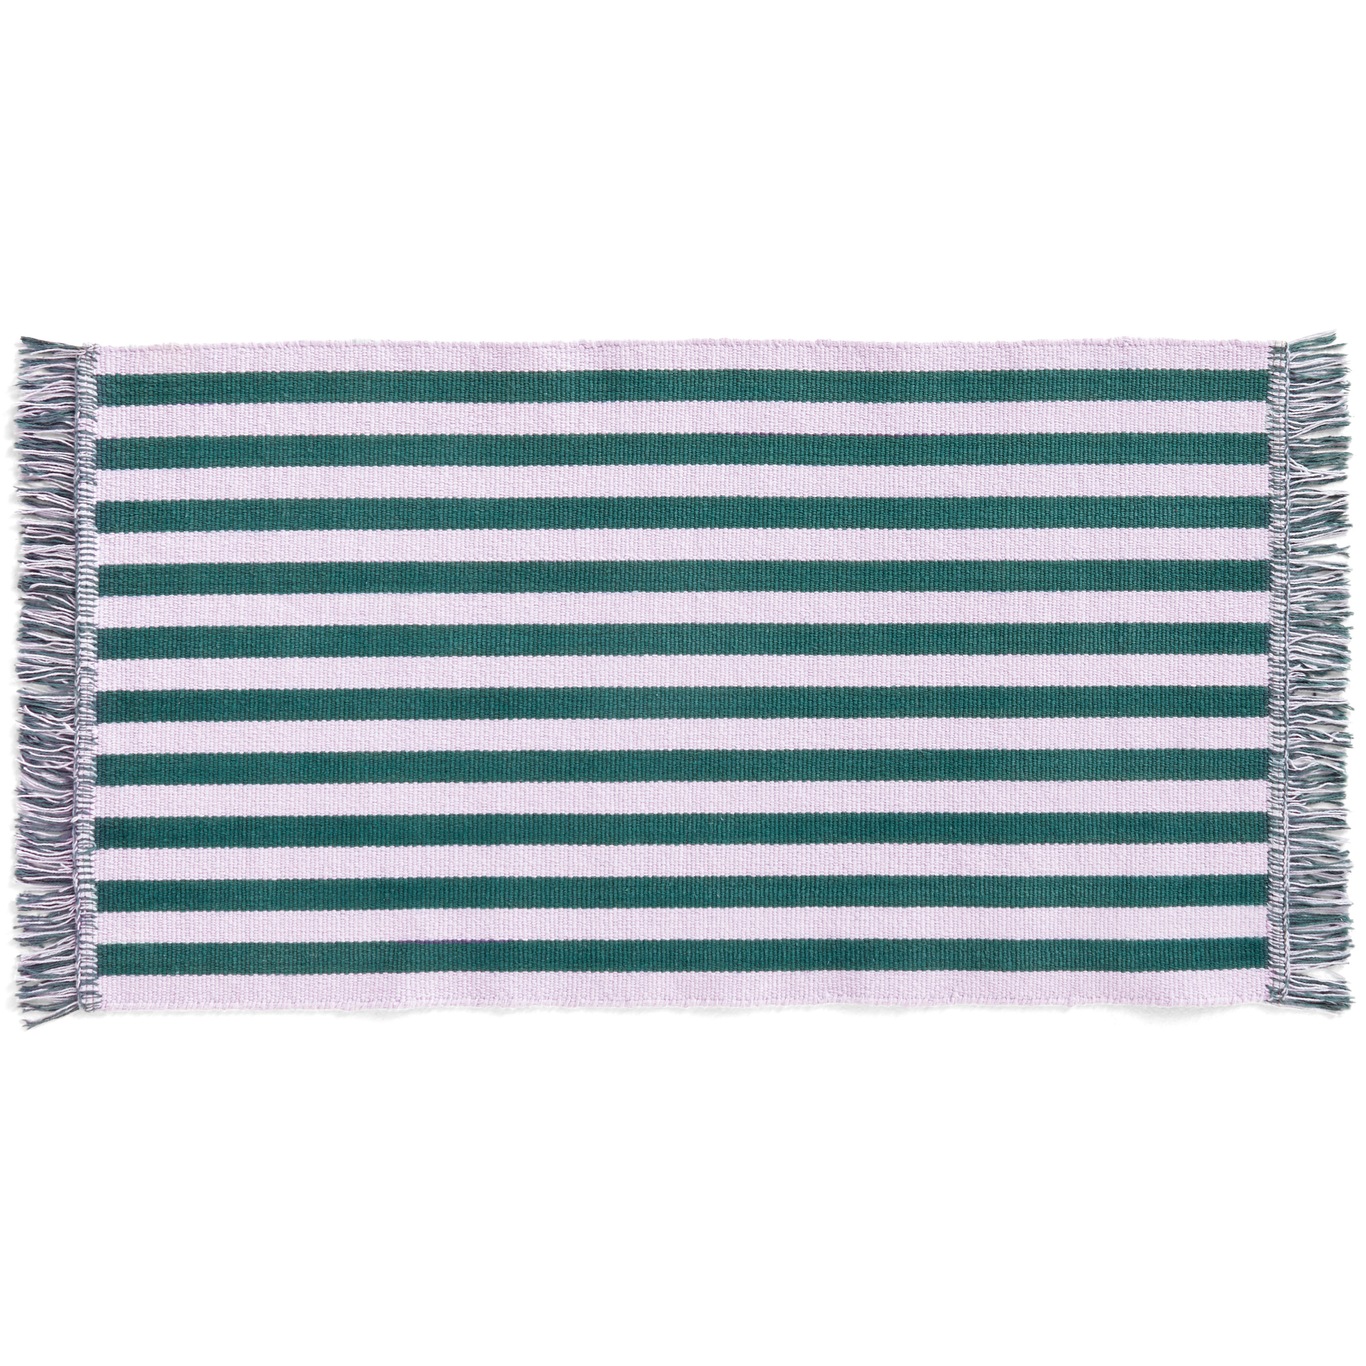 Stripes and Stripes Ovimatto 52x95 cm, Lavender Field